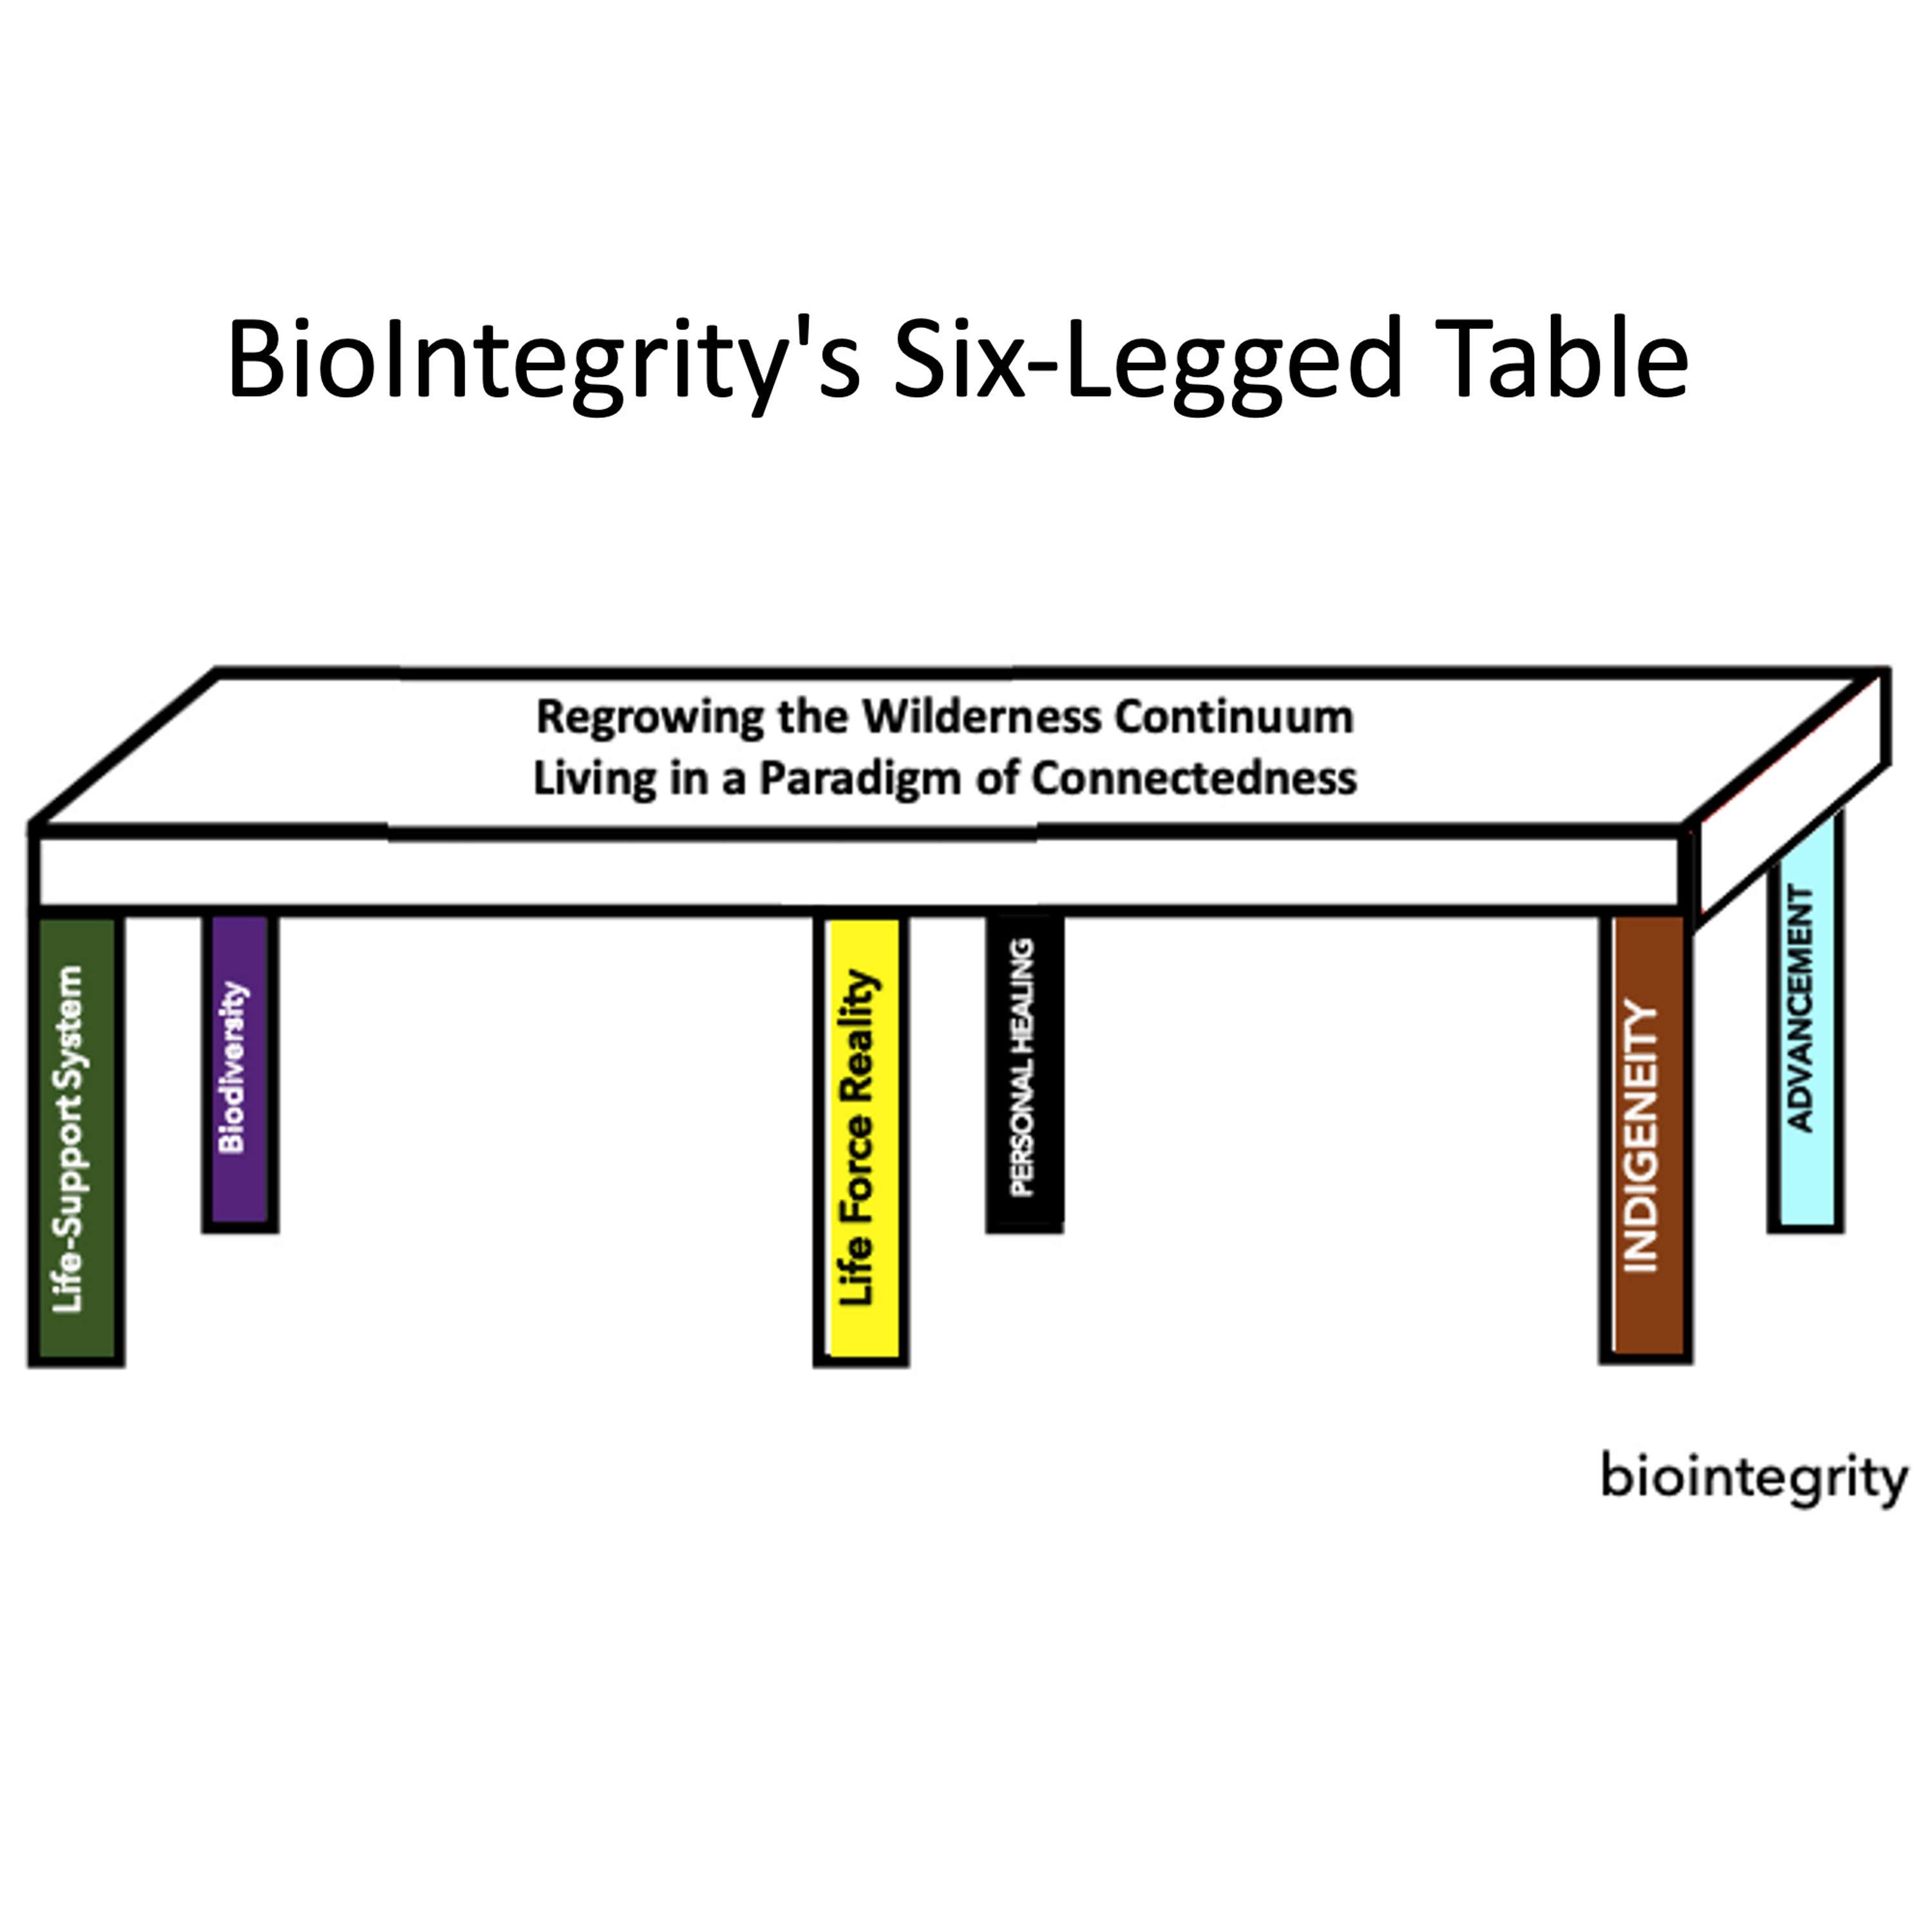 BioIntegrity's Six-Legged Table